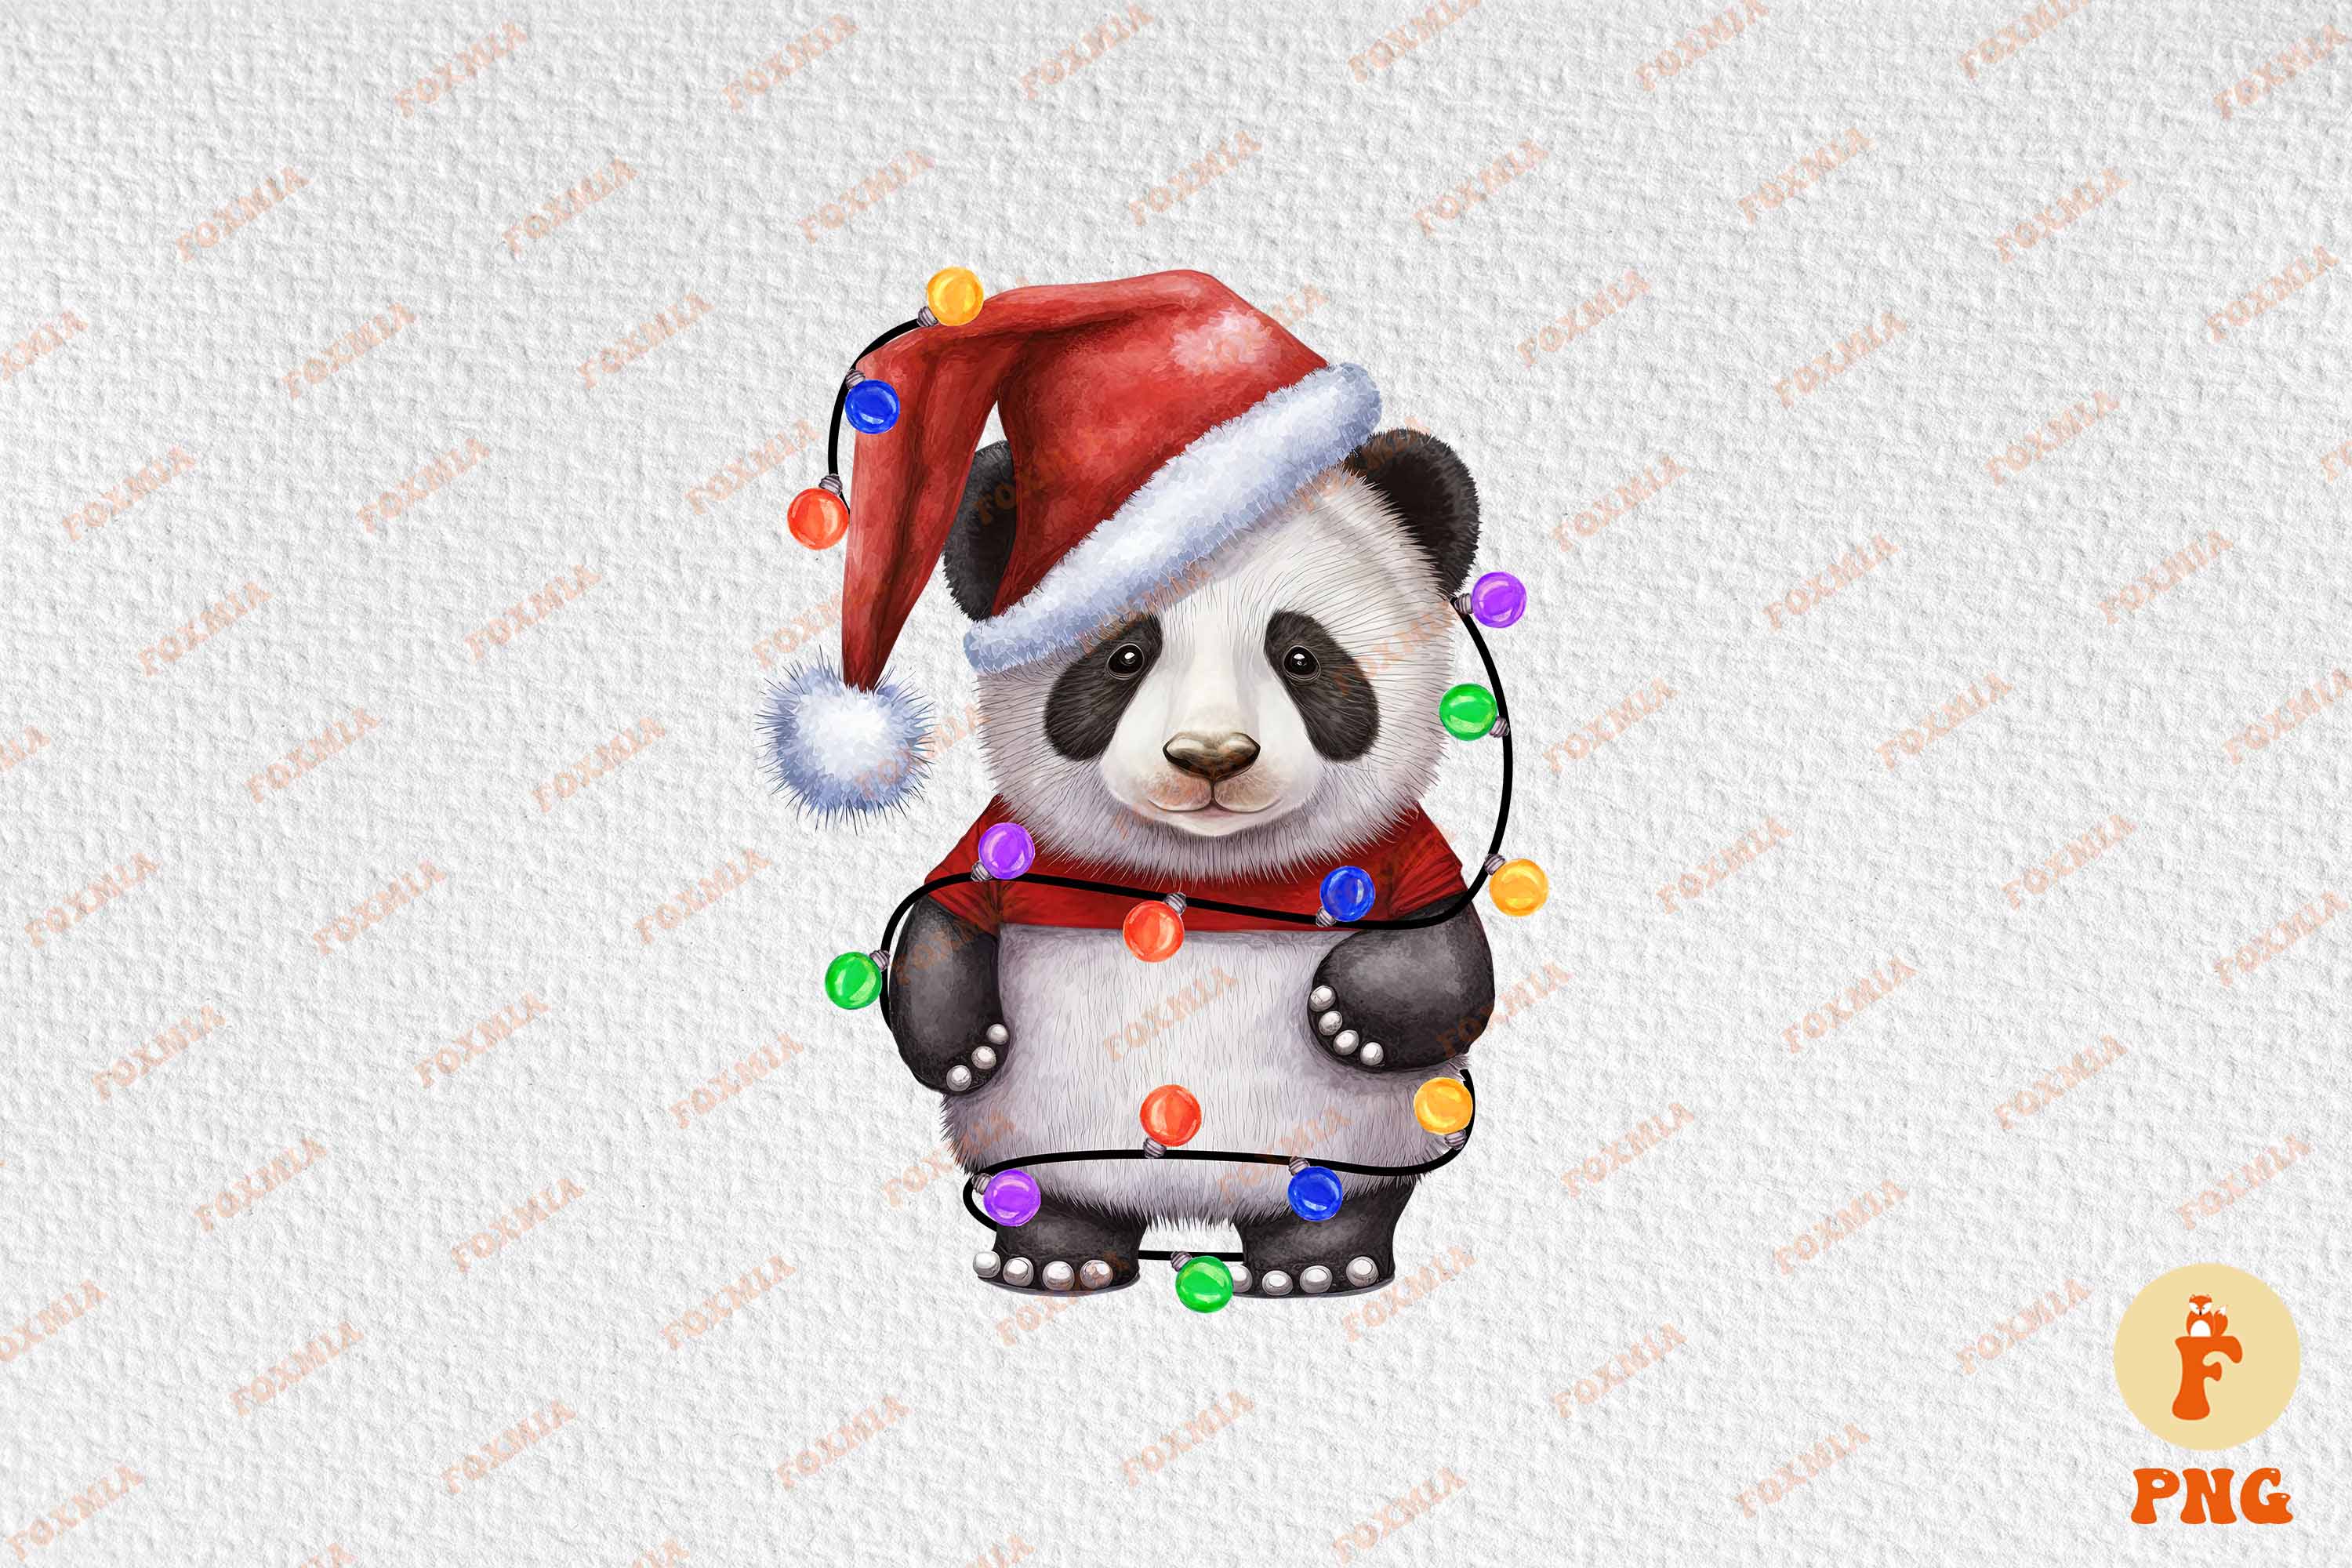 Unique image of a panda wearing a santa hat.